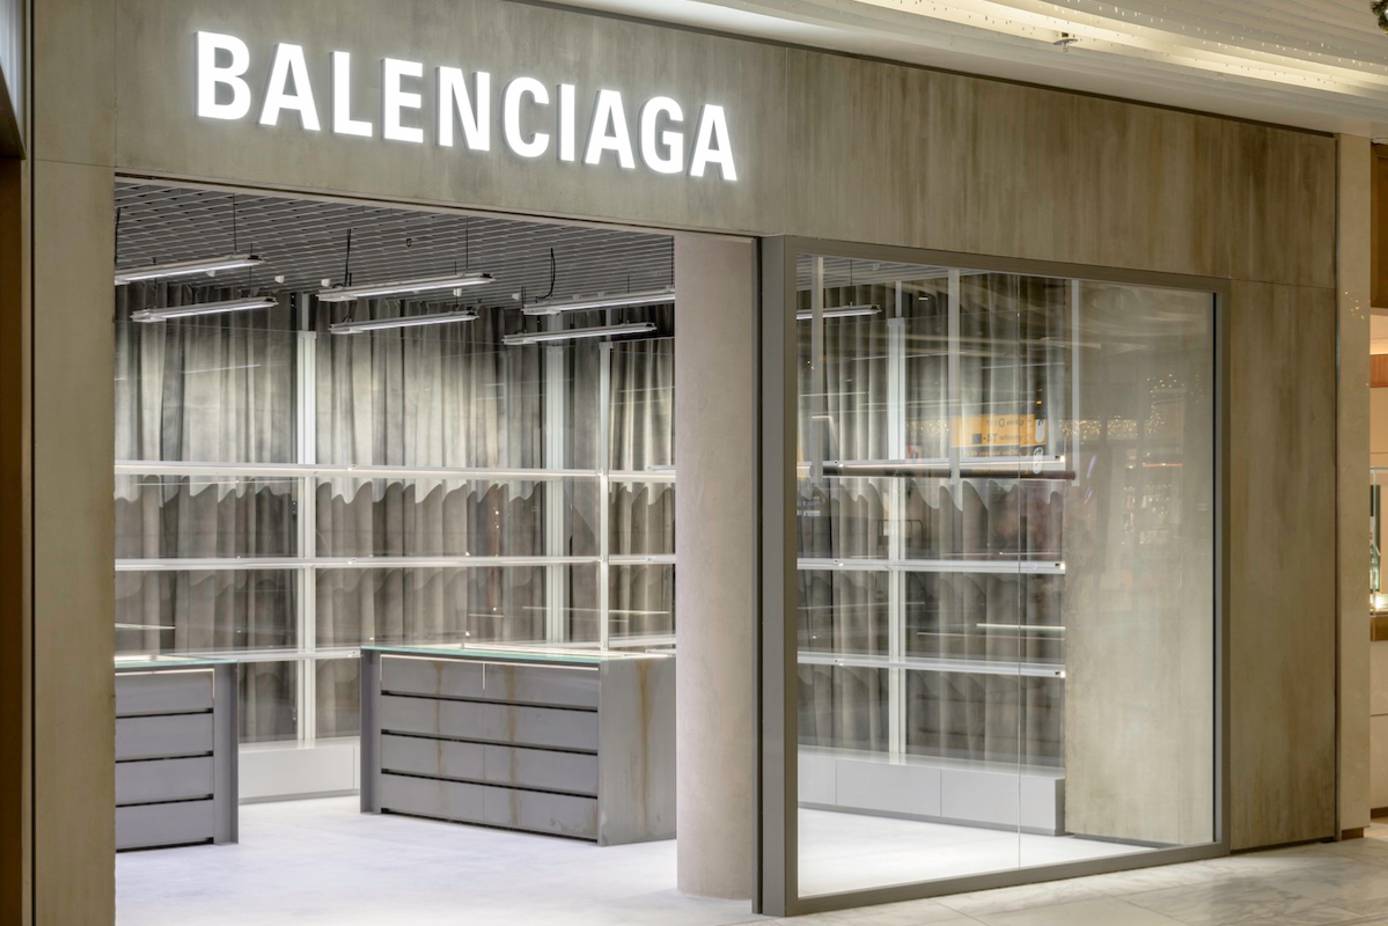 let Bliver værre Religiøs Balenciaga eröffnet zwei neue Stores in Deutschland